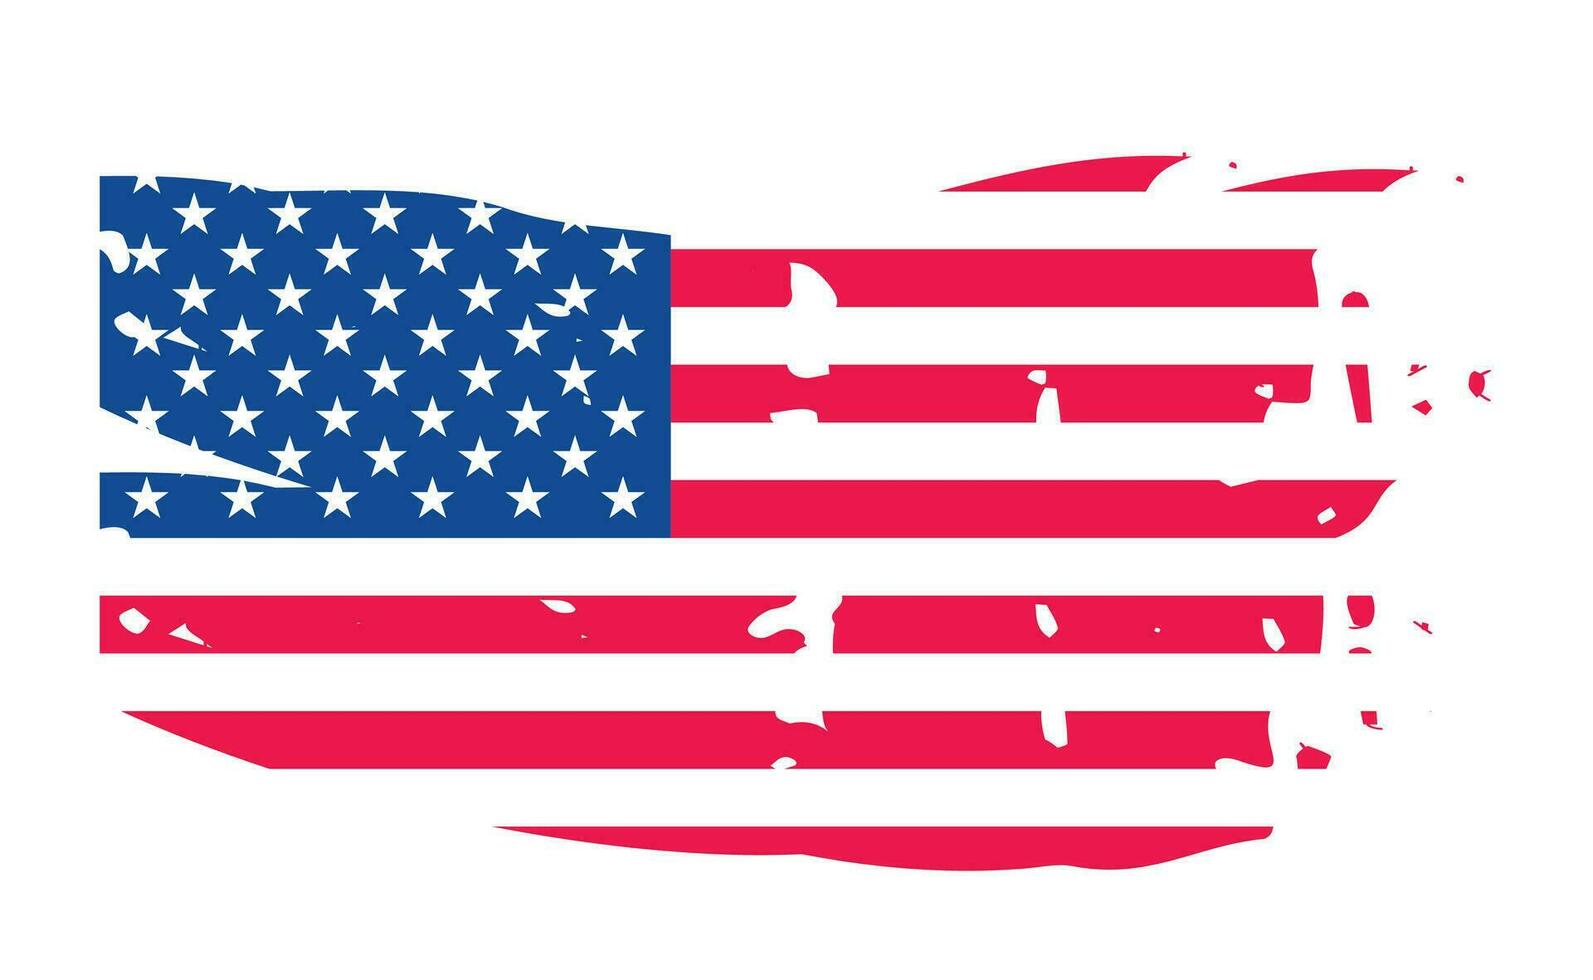 grunge nous drapeau brosse accident vasculaire cérébral effet. Etats-Unis drapeau brosse peindre utilisation à 4 de juillet américain Président journée. uni États de Amérique drapeau avec aquarelle peindre brosse coups texture ou grunge texture conception. vecteur